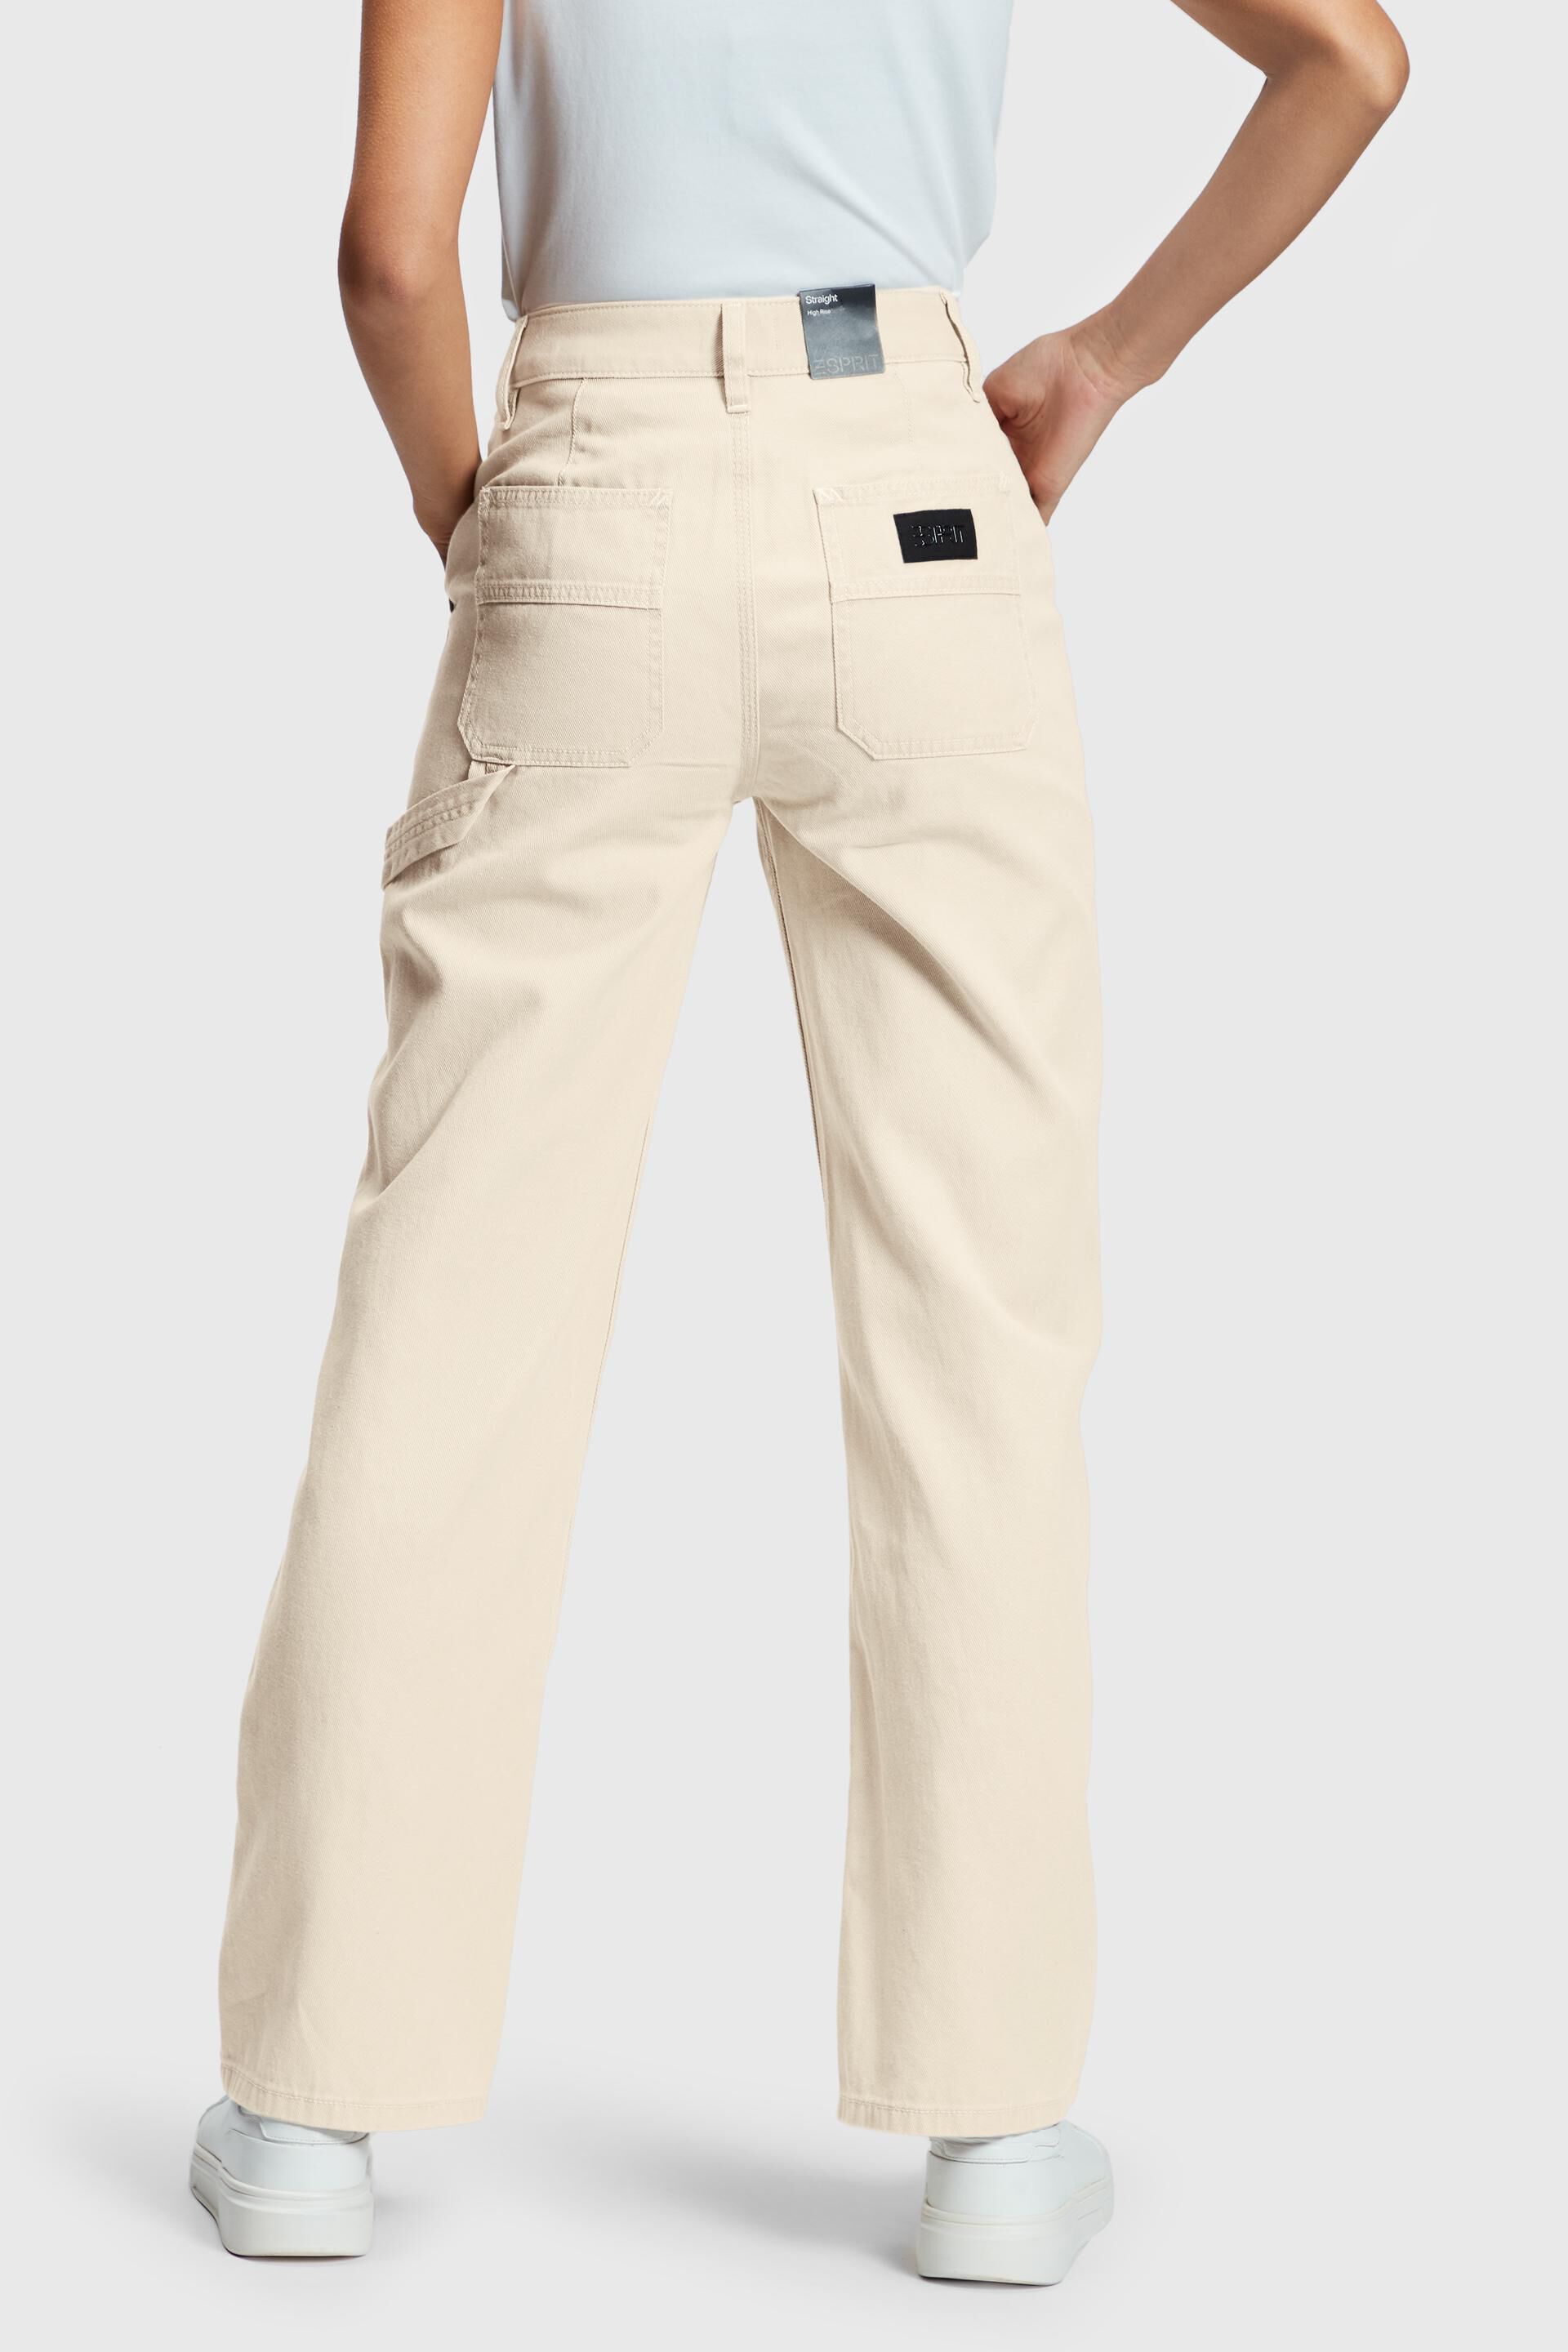 Esprit Damen Workwear-Jeans mit hohem Bein geradem 90er-Jahre-Stil Bund und im